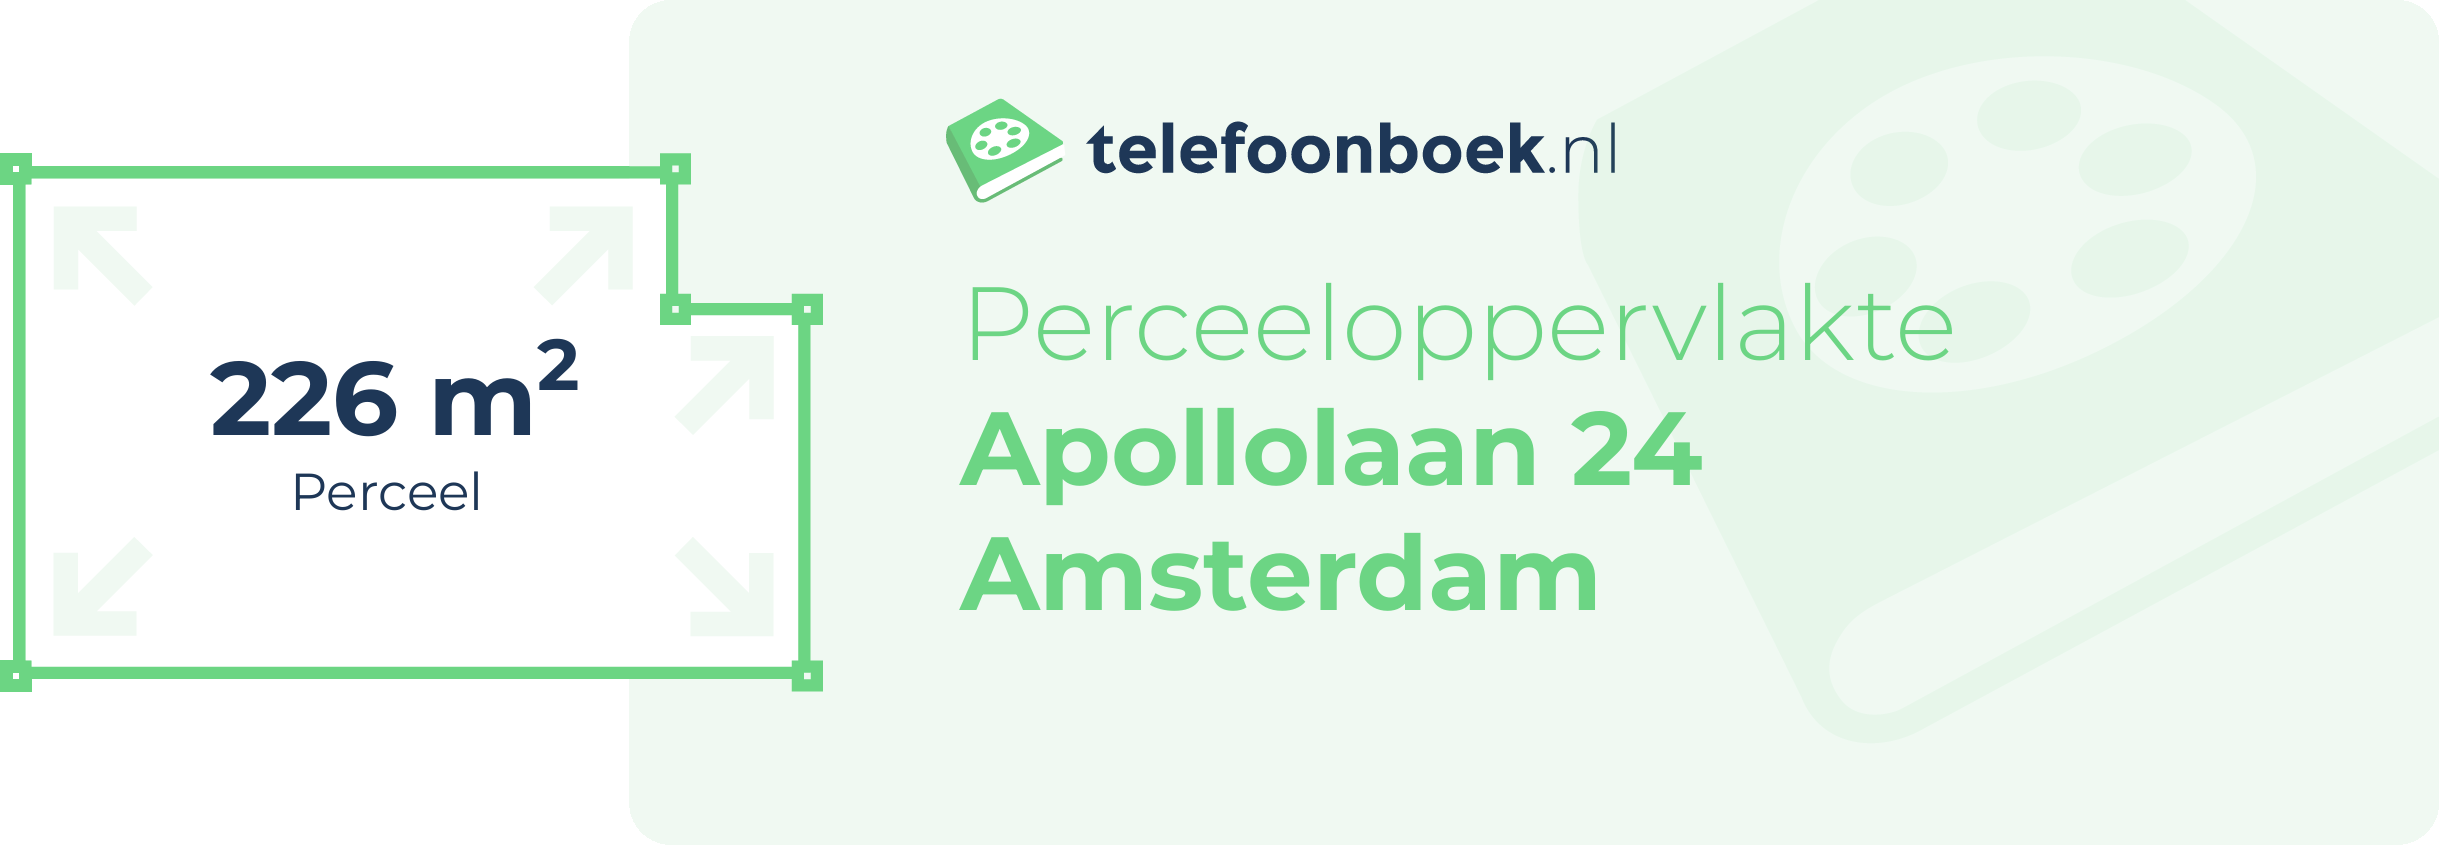 Perceeloppervlakte Apollolaan 24 Amsterdam